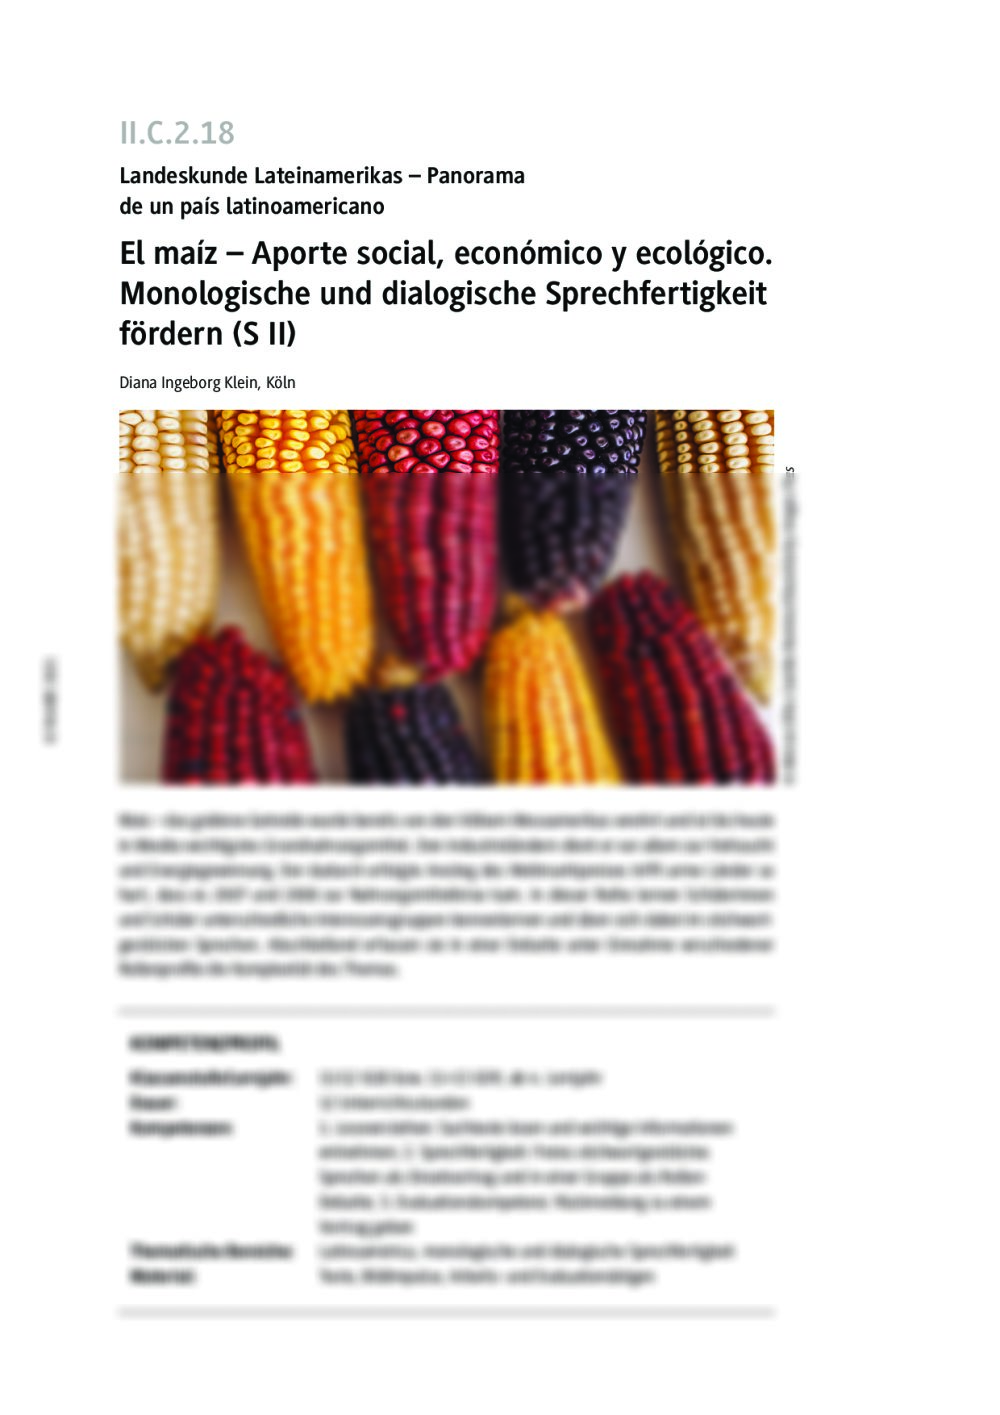 El maíz - Aporte social, económico y ecológico - Seite 1